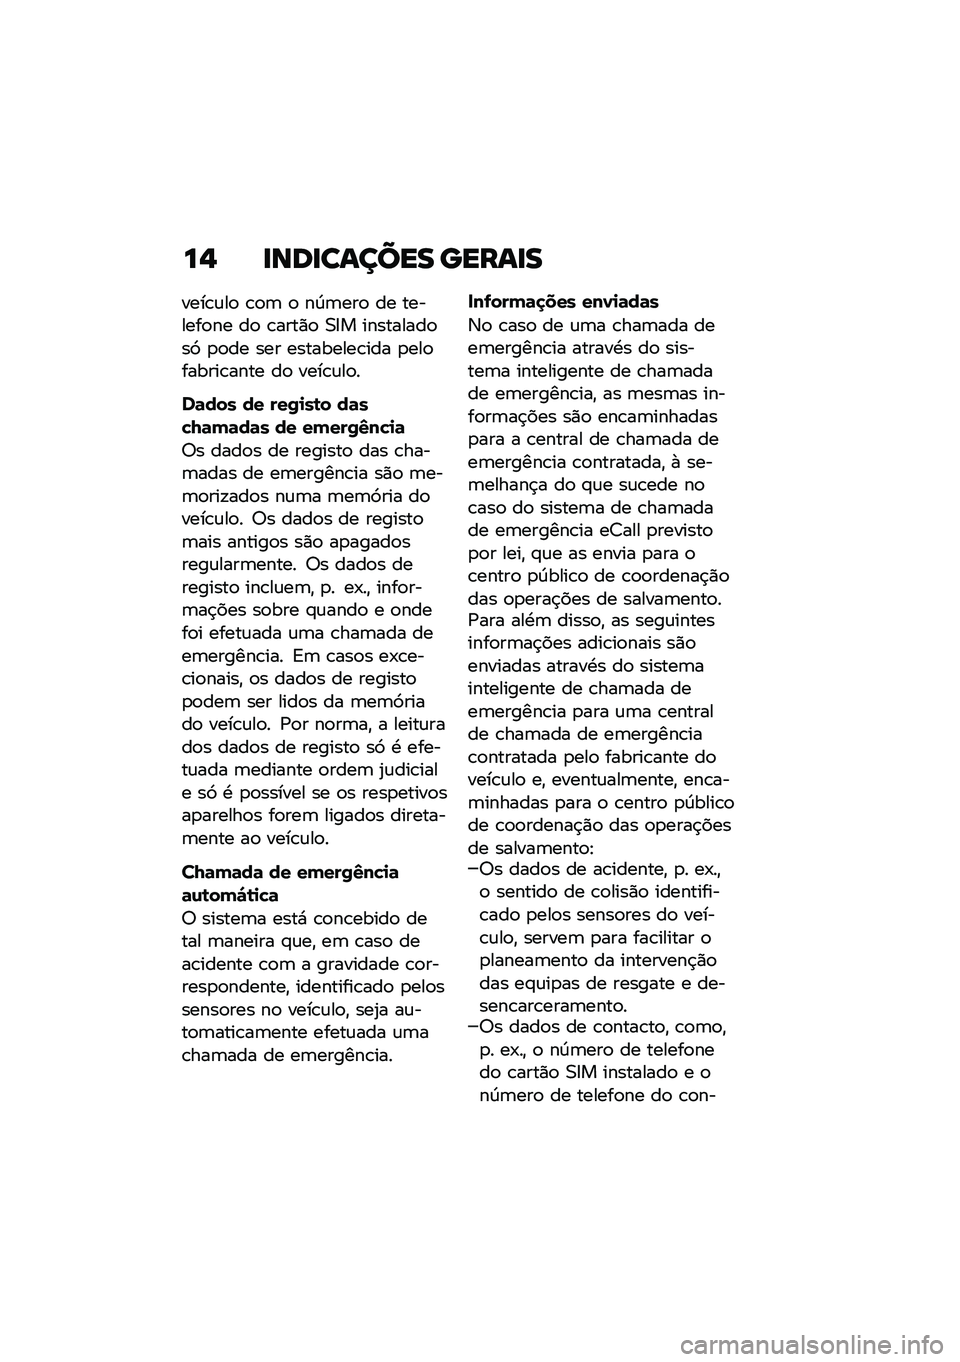 BMW MOTORRAD F 850 GS 2021  Manual do condutor (in Portuguese) ��, �
���
������ �����
�
����\b�\f��
 �\b�
�	 �
 ��D�	���
 �� �������
�� ��
 �\b����)�
 �0�8� ���������
��9 �
�
�� ��� ���������\b��� �
��